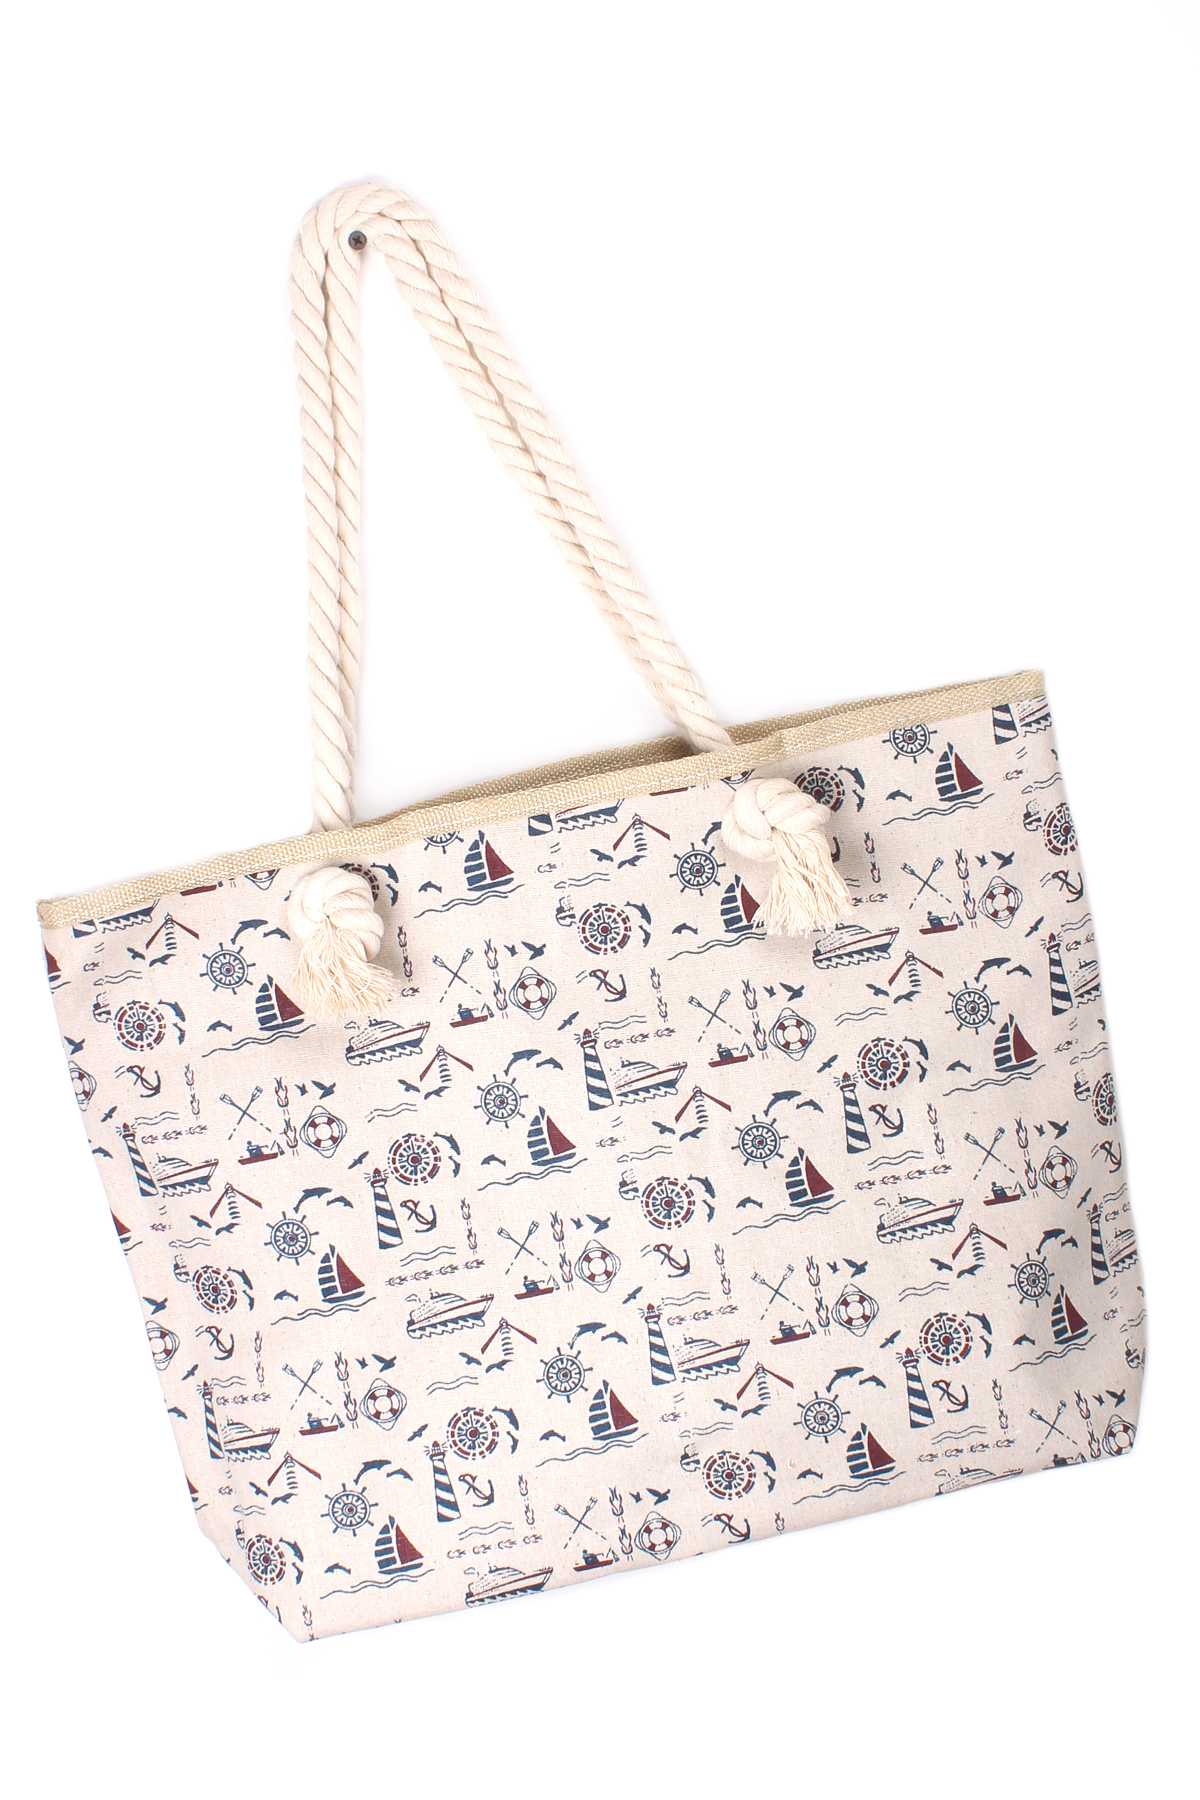 Nautical Print Beach Bag - Bags & Clutches